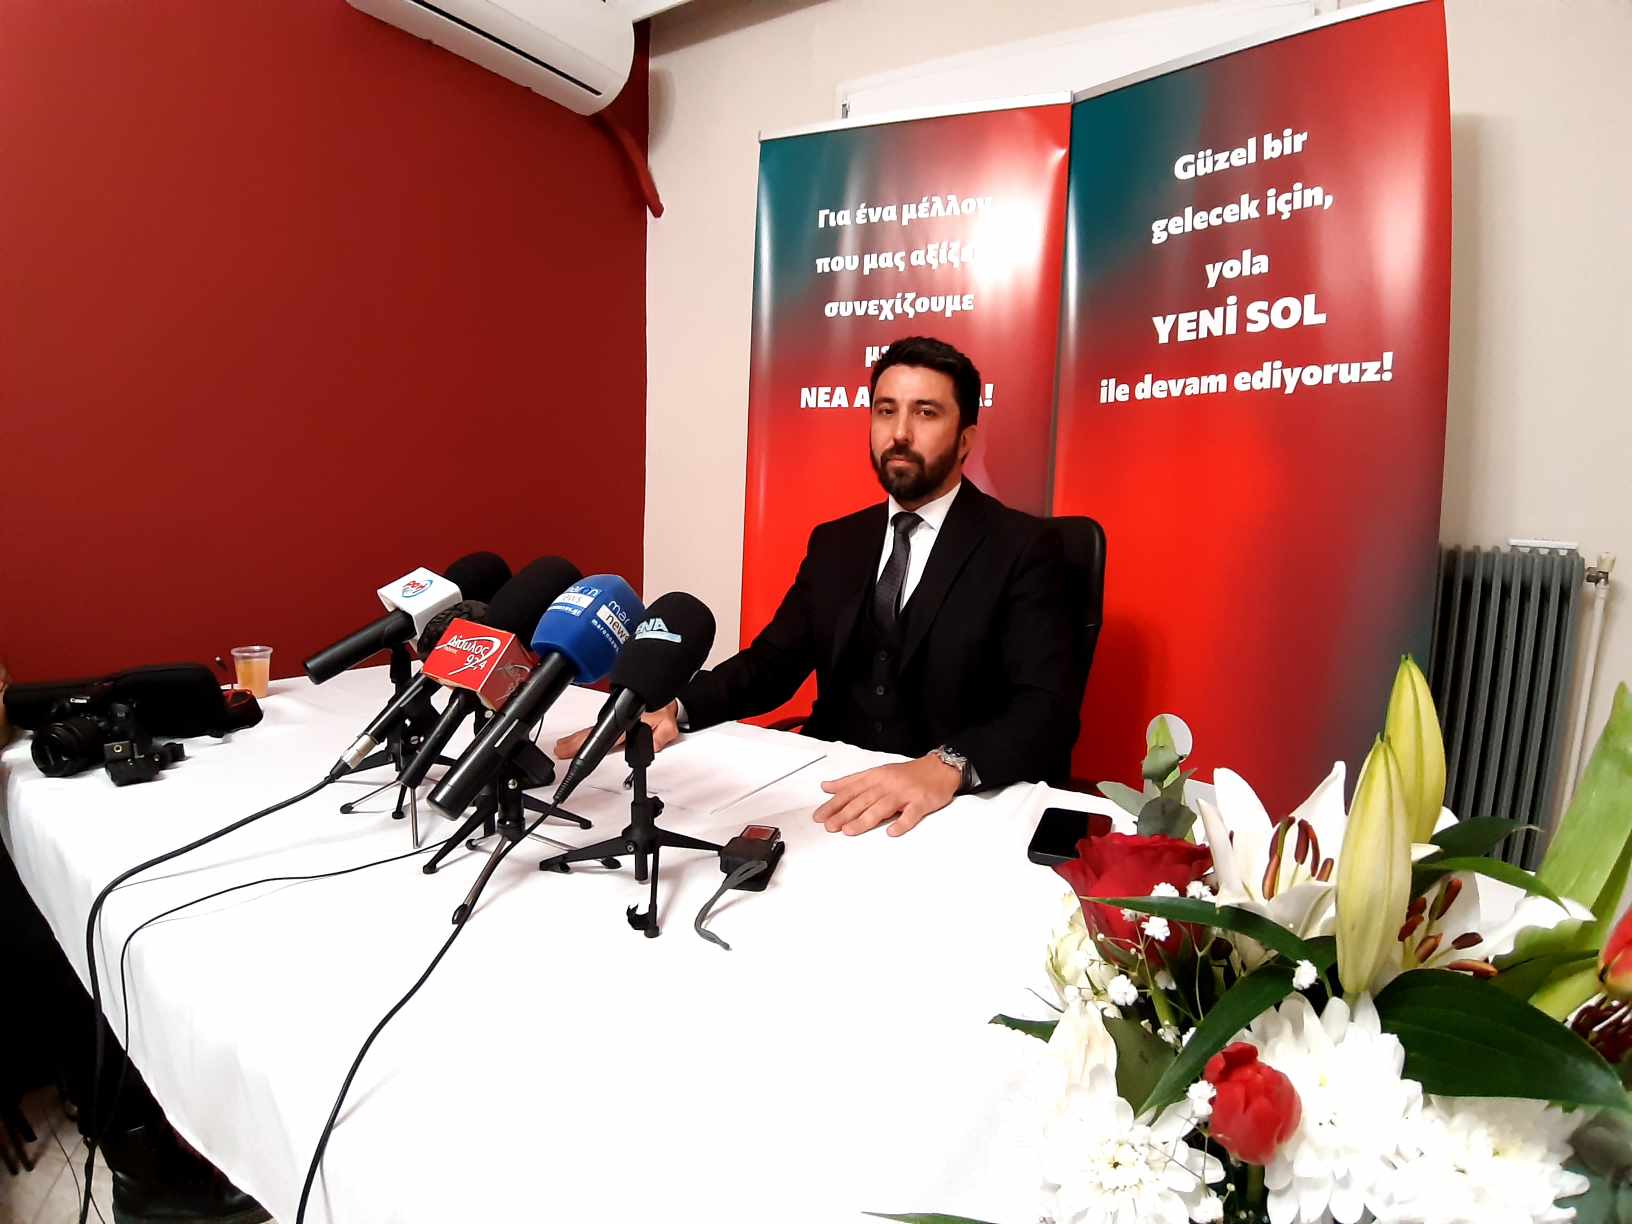 Οζγκιούρ Φερχάτ: Εγκαίνια του πολιτικού του γραφείου στην Κομοτηνή και συνέντευξη εφ’ όλης της ύλης στα τοπικά ΜΜΕ (video)